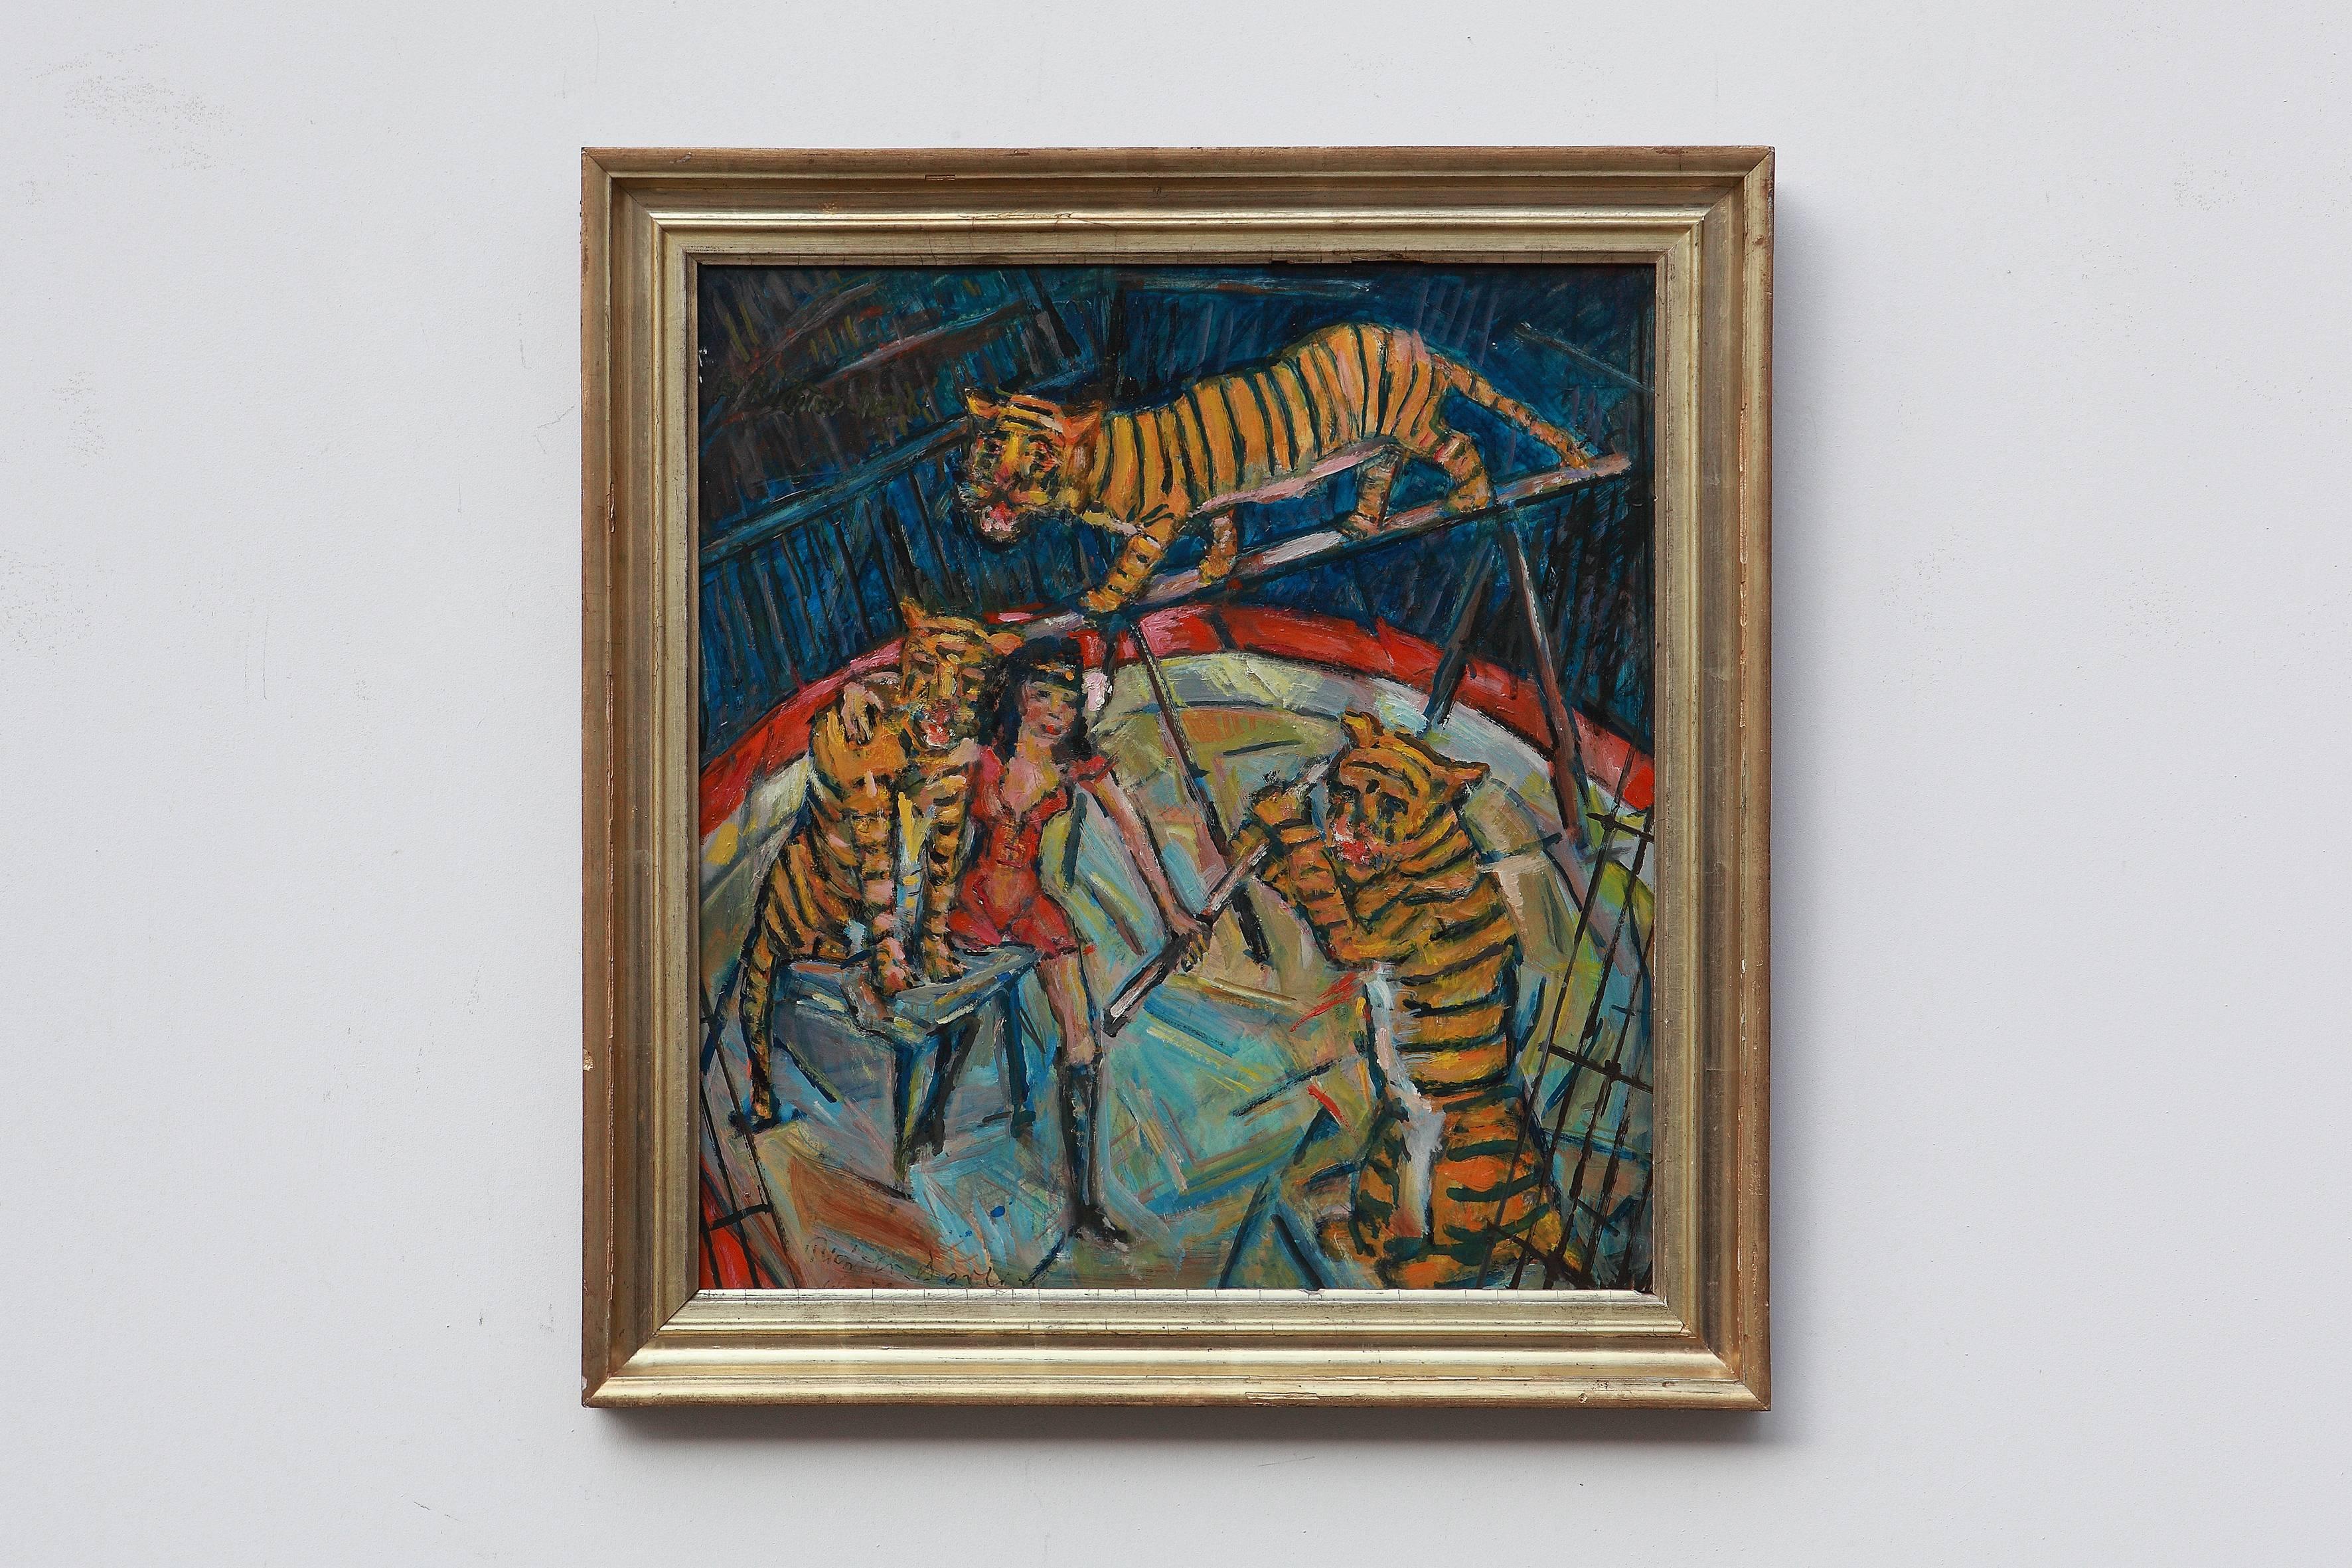 Heinrich Richter-Berlin, Ölgemälde, Tiger-Training, 1979 – Painting von Heinrich Richter (b.1884)